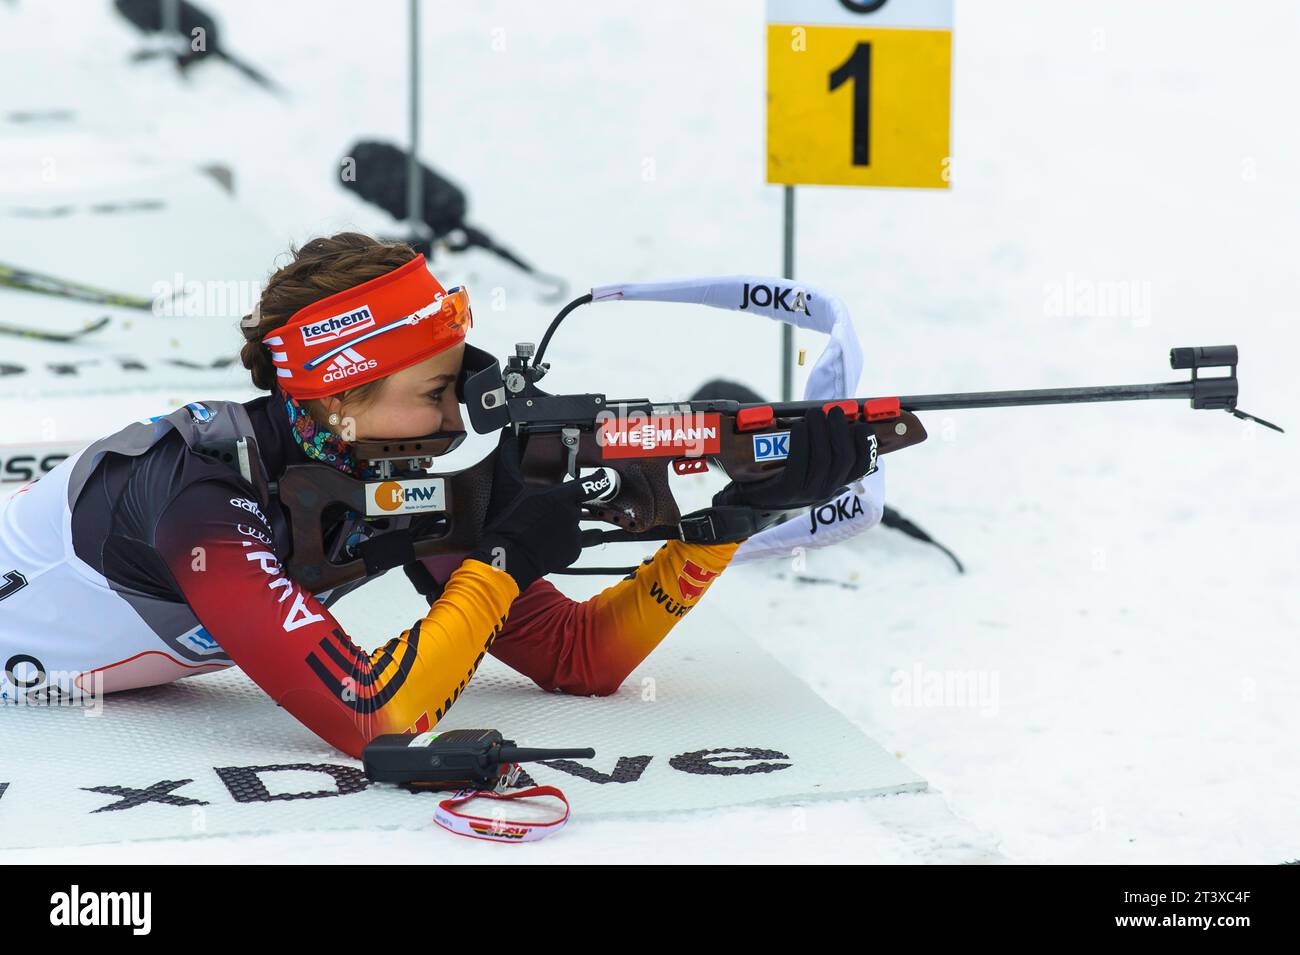 Luise Kummer Aktion Biathlon Welt Cup 4 x 6 KM Staffel der Frauen in Oberhof, Deutschland am 07.01.2015 Stock Photo